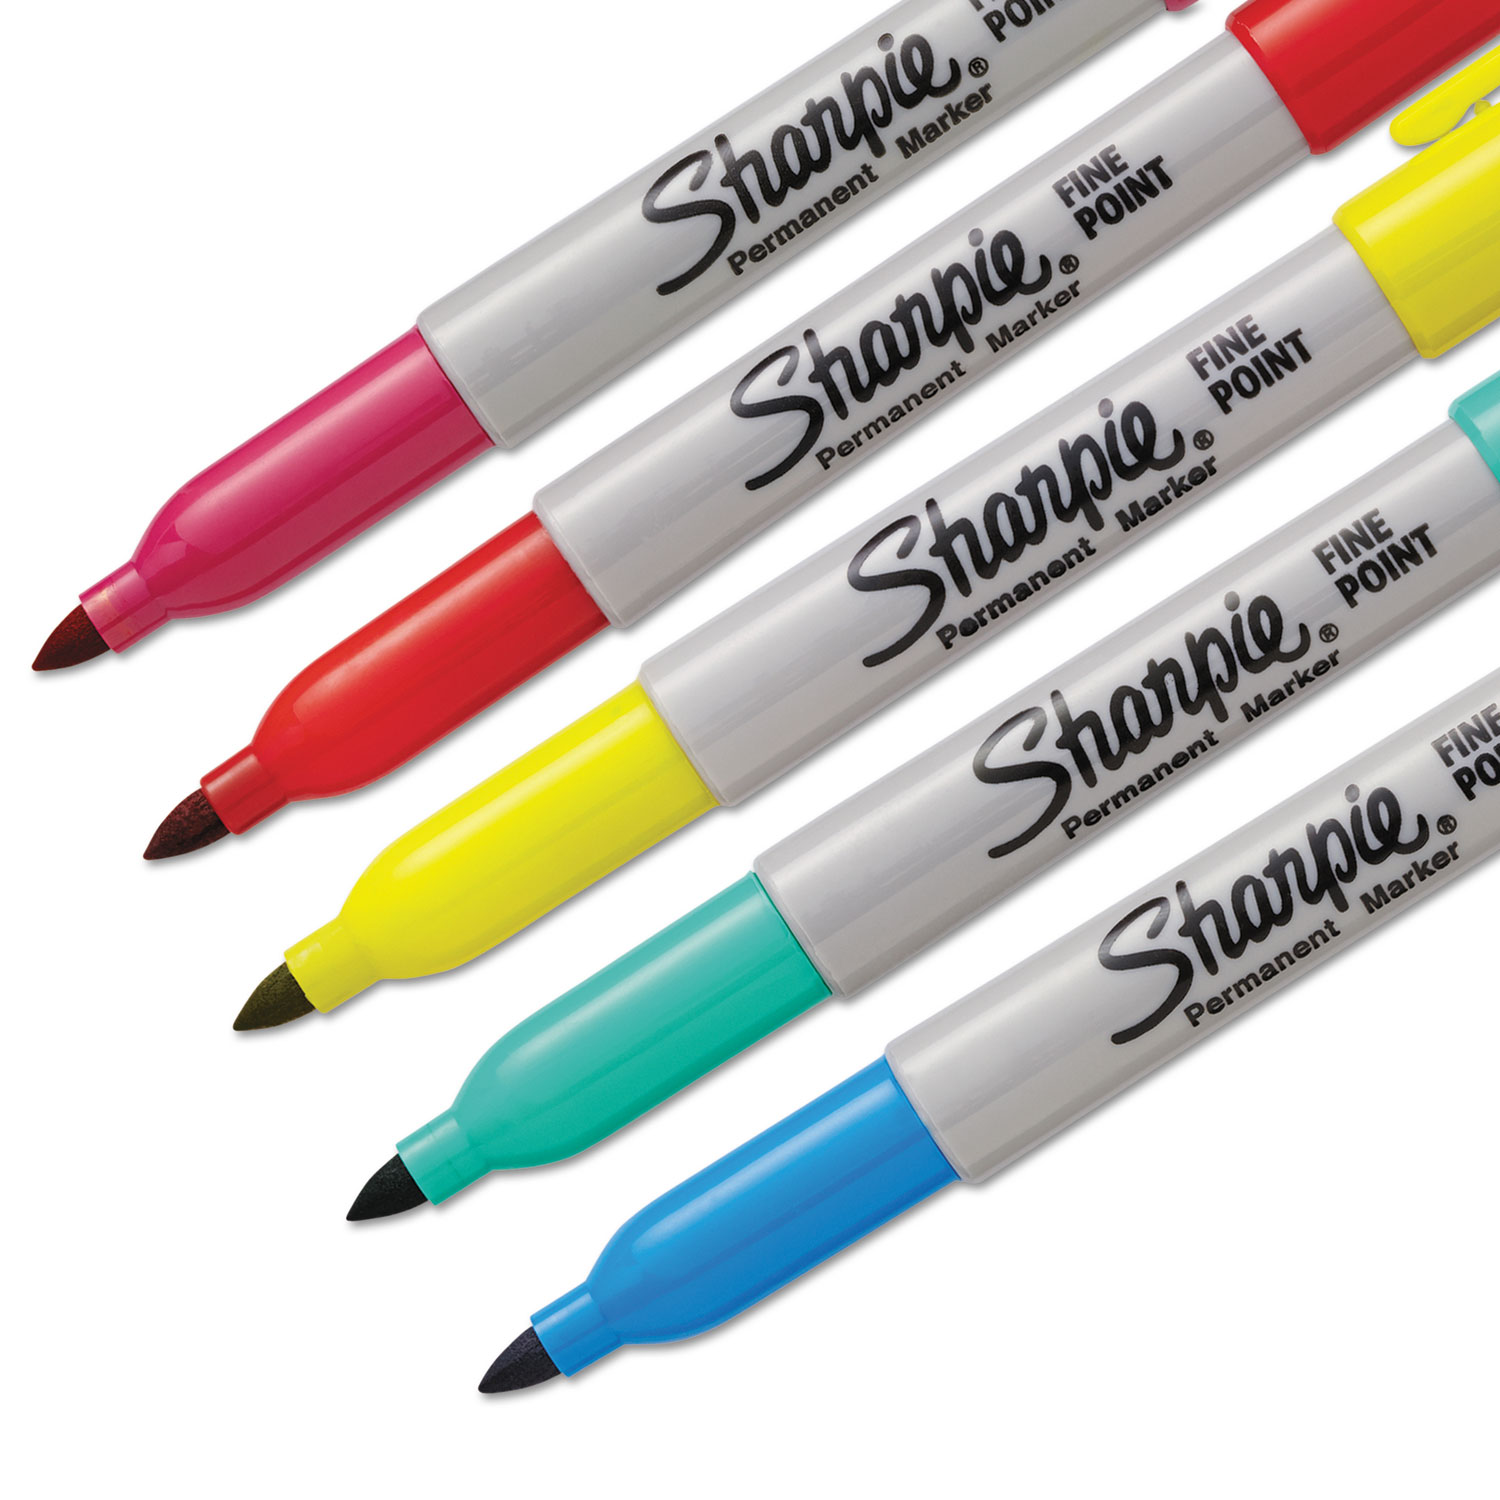  Sharpie 1948352 Fine Tip Permanent Marker, Assorted Color Burst Limited Edition, 5/Pack (SAN1948352) 